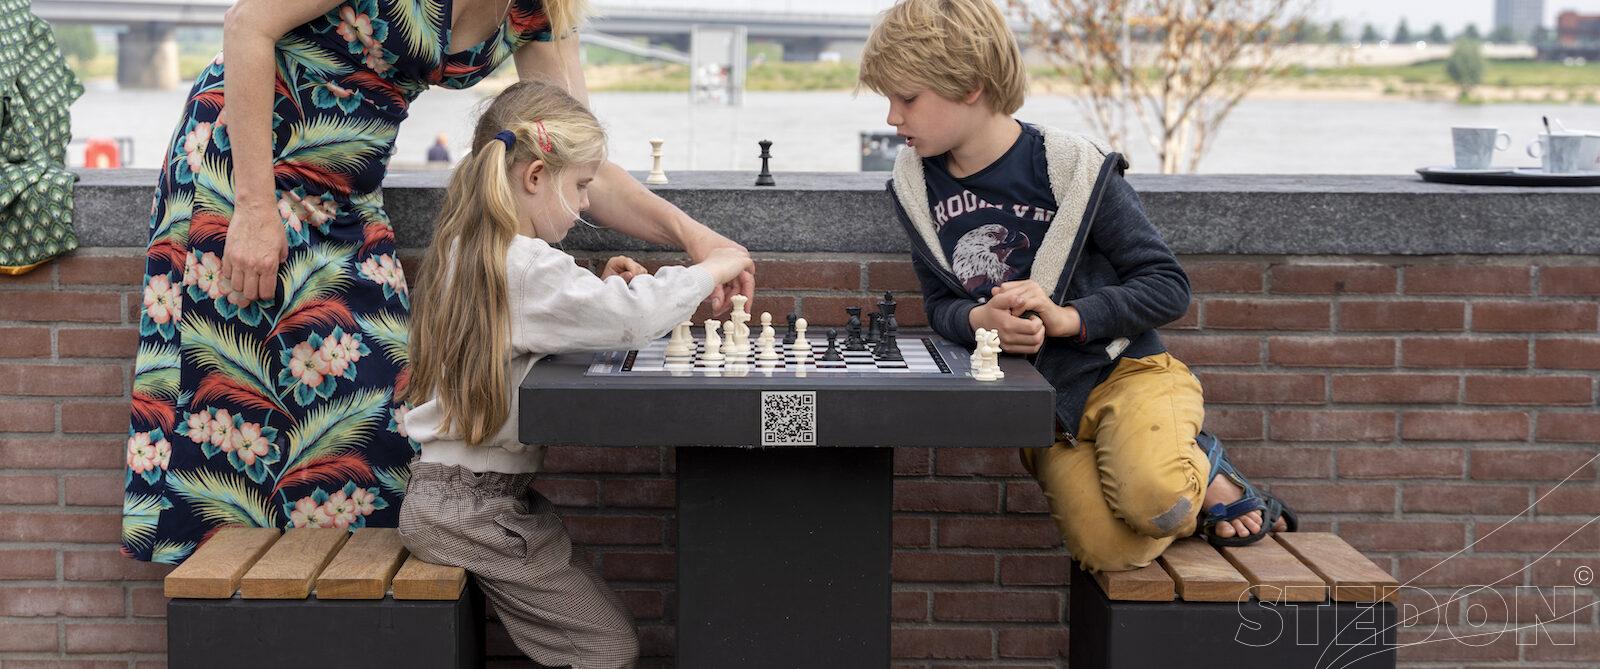 schaaktafel, schaaktafels, betonnen schaaktafel, Urban Chess, buiten schaken